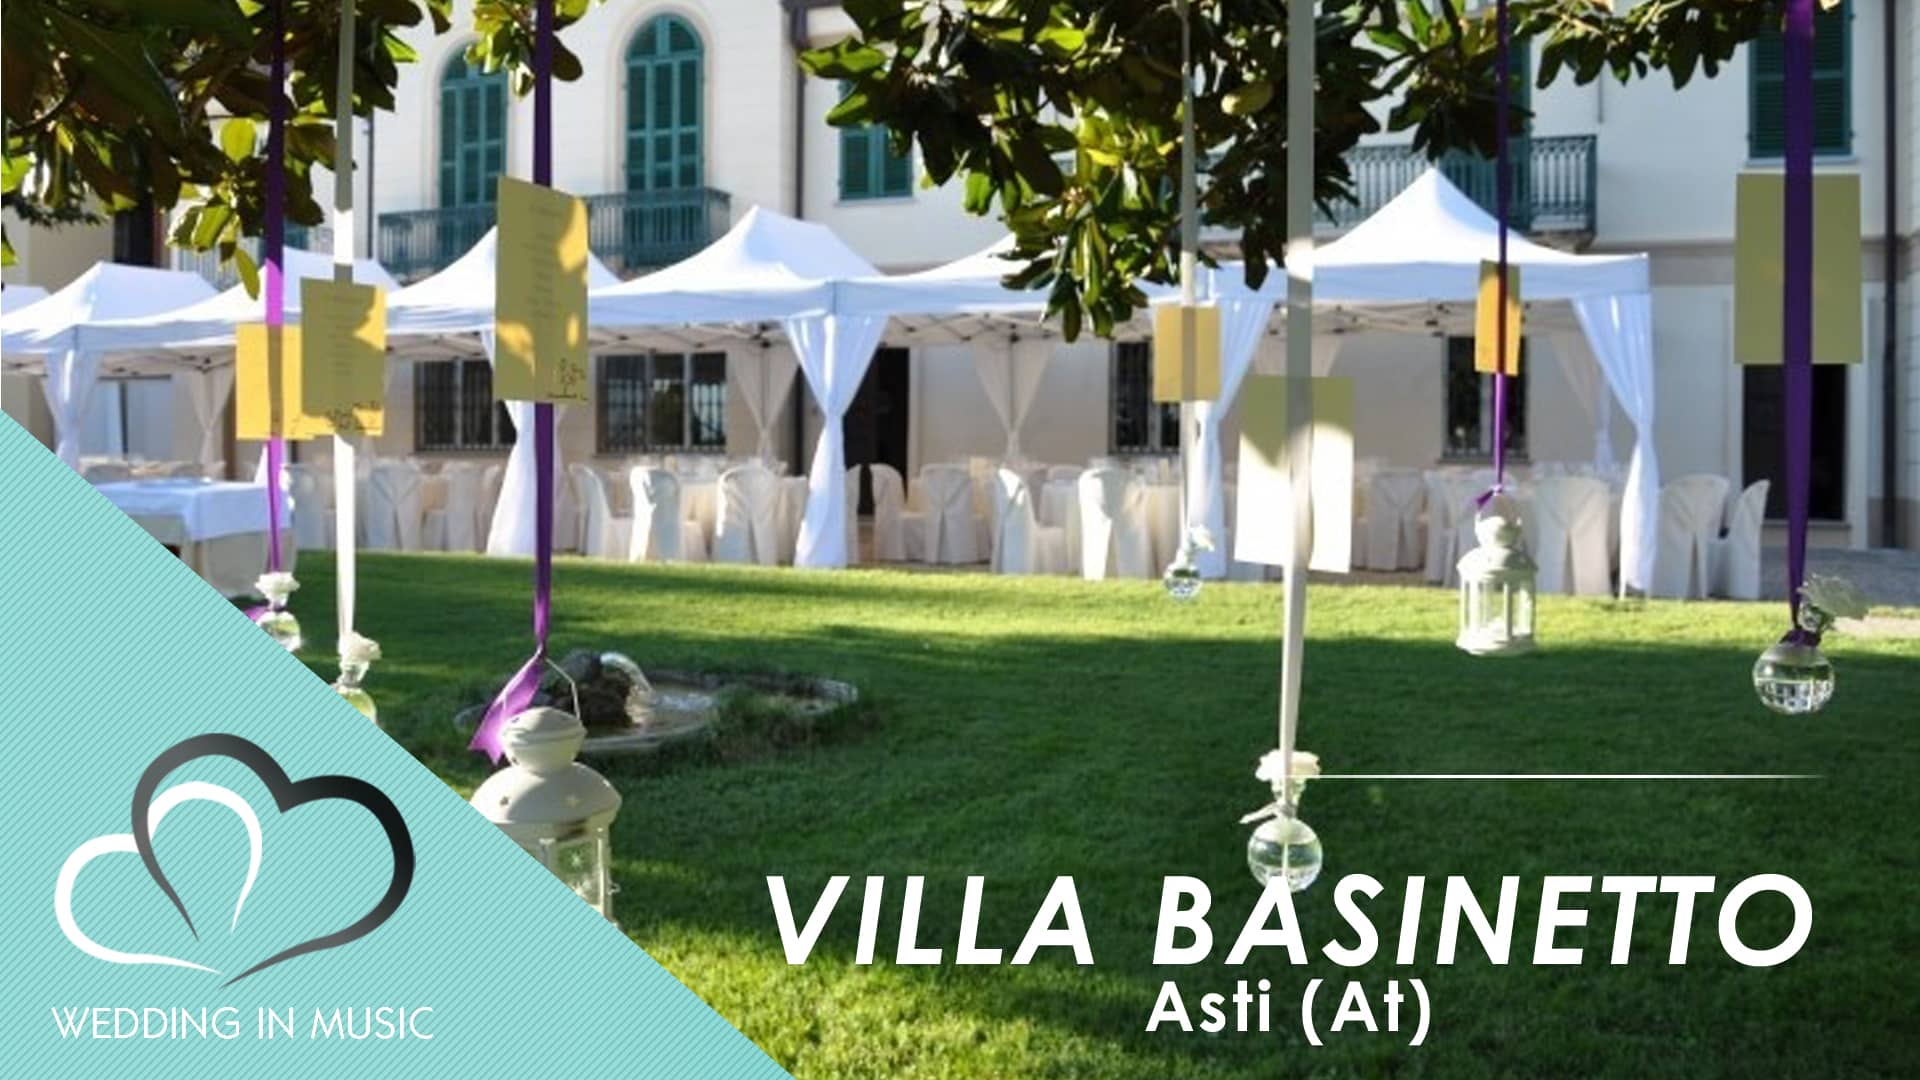 villa basinetto location per matrimonio